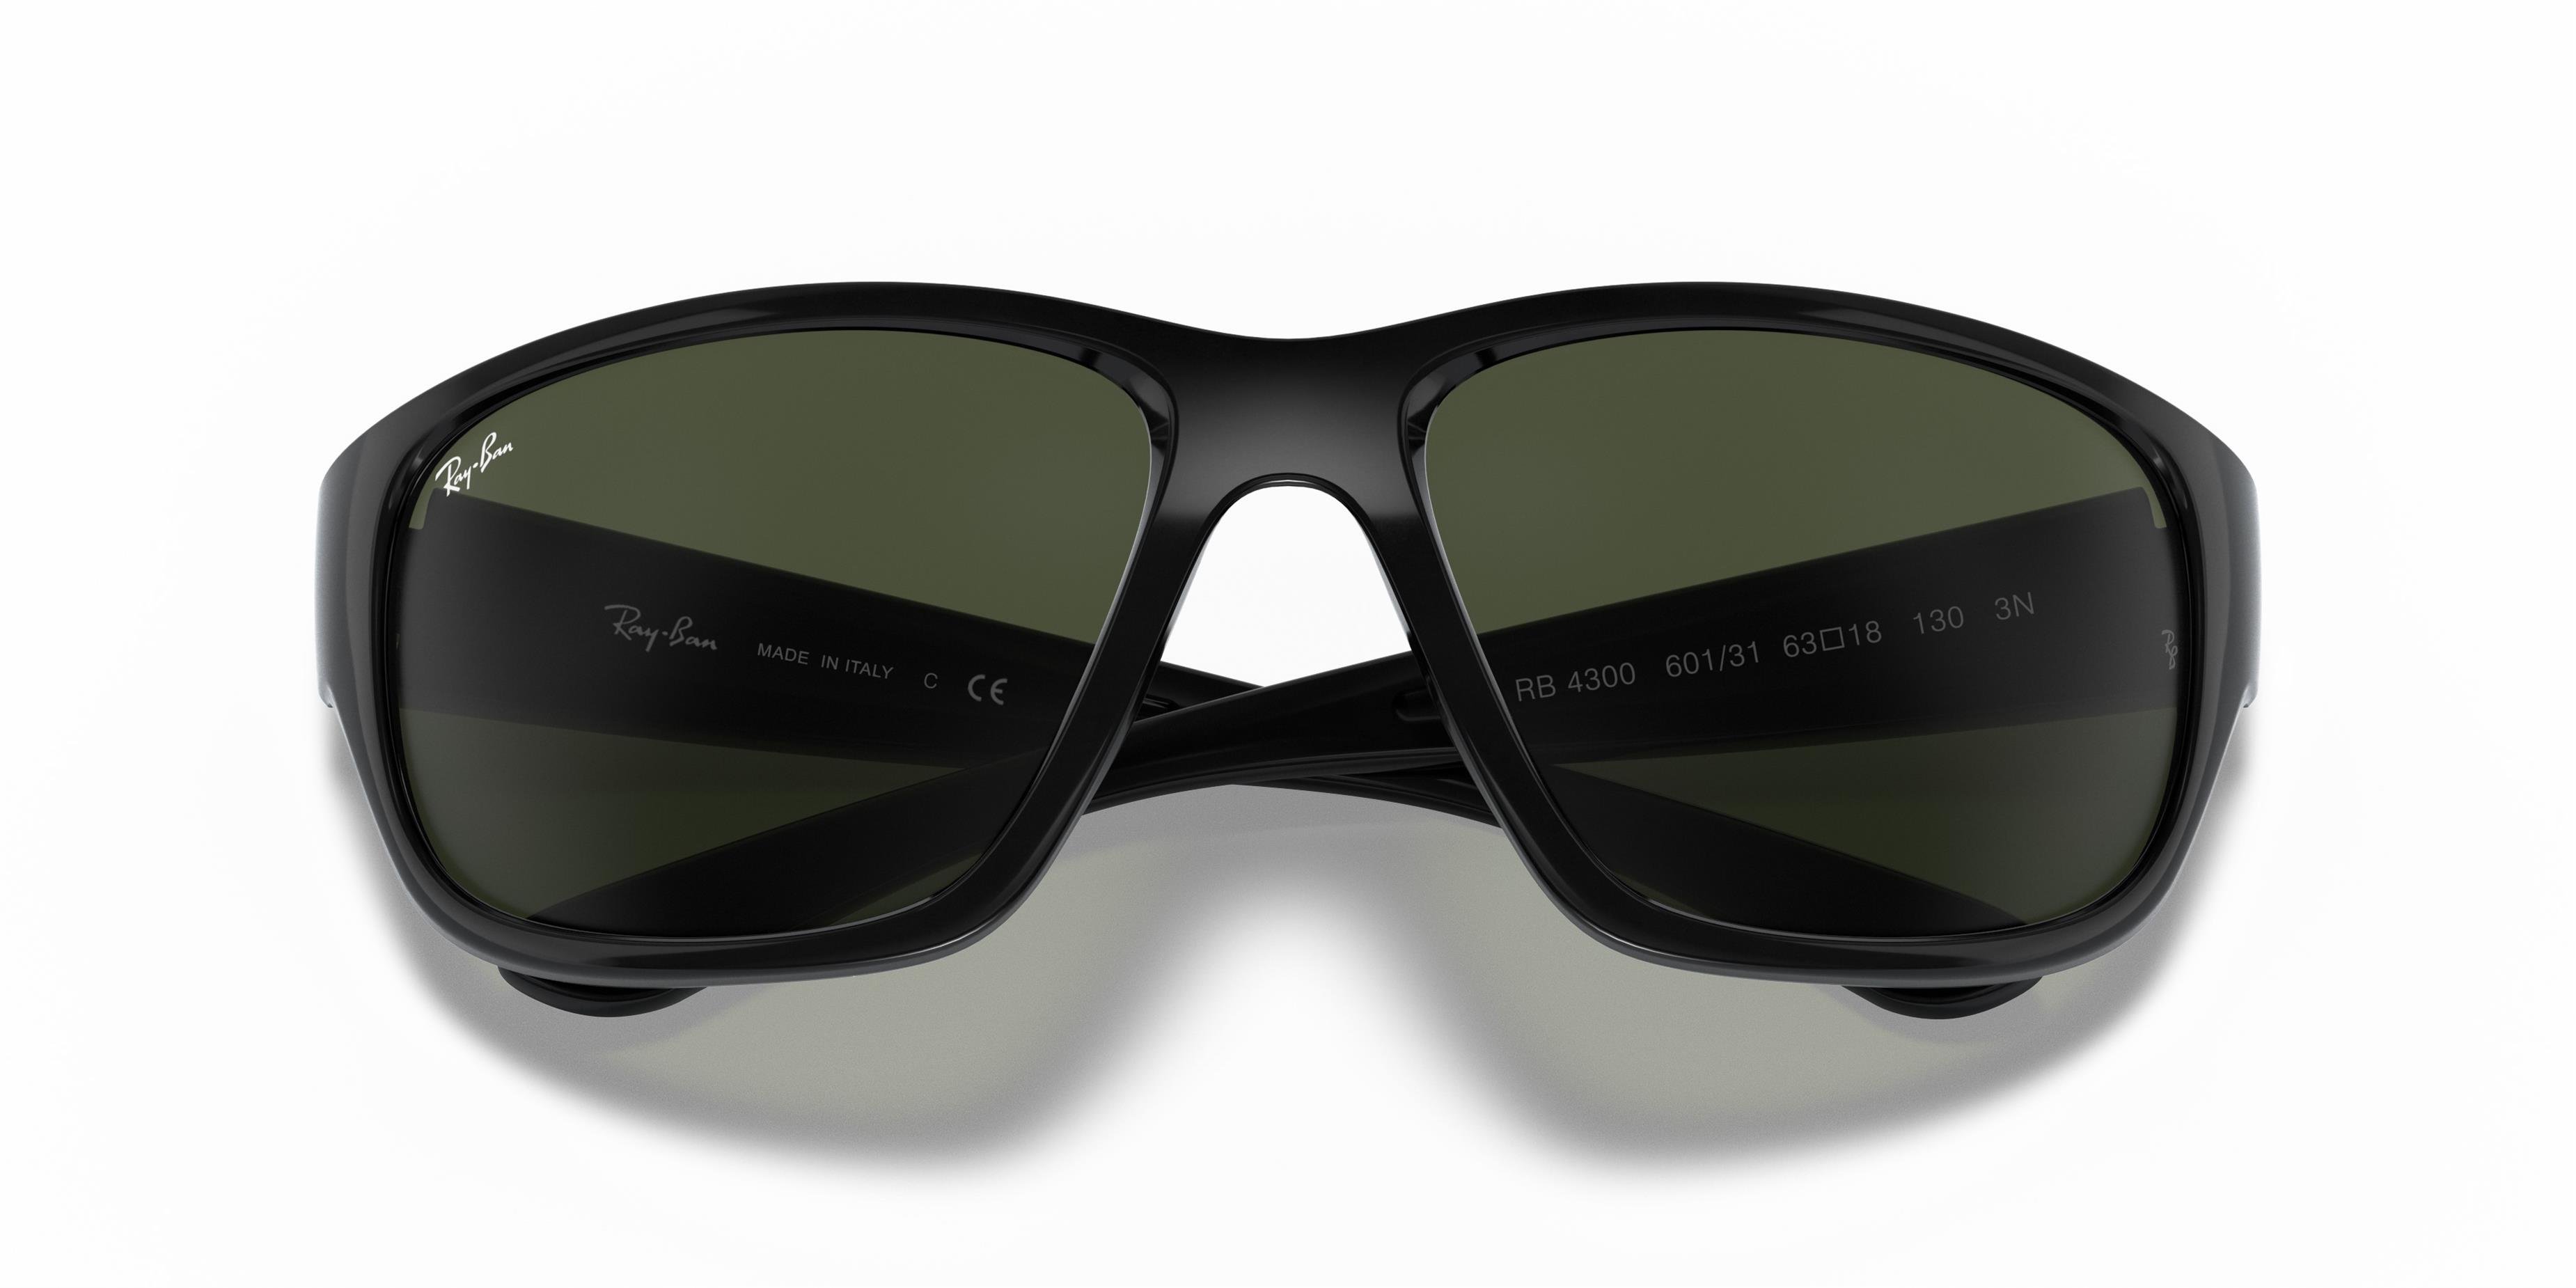 Adadünya Optik | Ray-Ban 4300 601/31 63 MEN Sunglasses